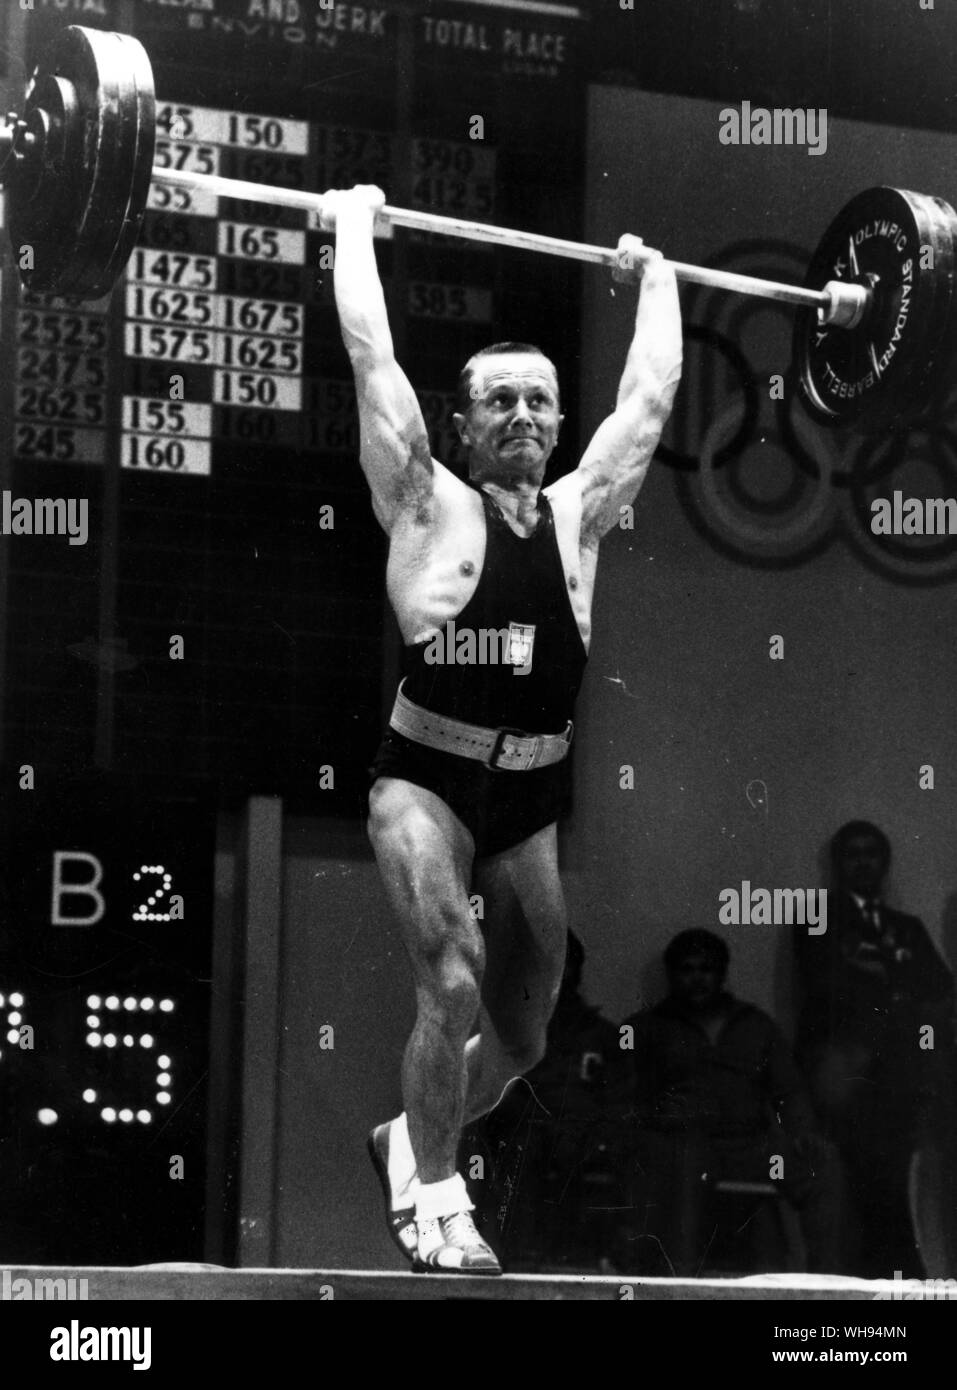 Mexiko Stadt Olympia 1968: Waldemar Baszanowski Polens Aufzüge 167,5 kg im sauberen und Ruck bei der leichten Gewichtheben Wettbewerb. Seine Insgesamt heben von 437.5 kg gab ihm die Goldmedaille. Stockfoto